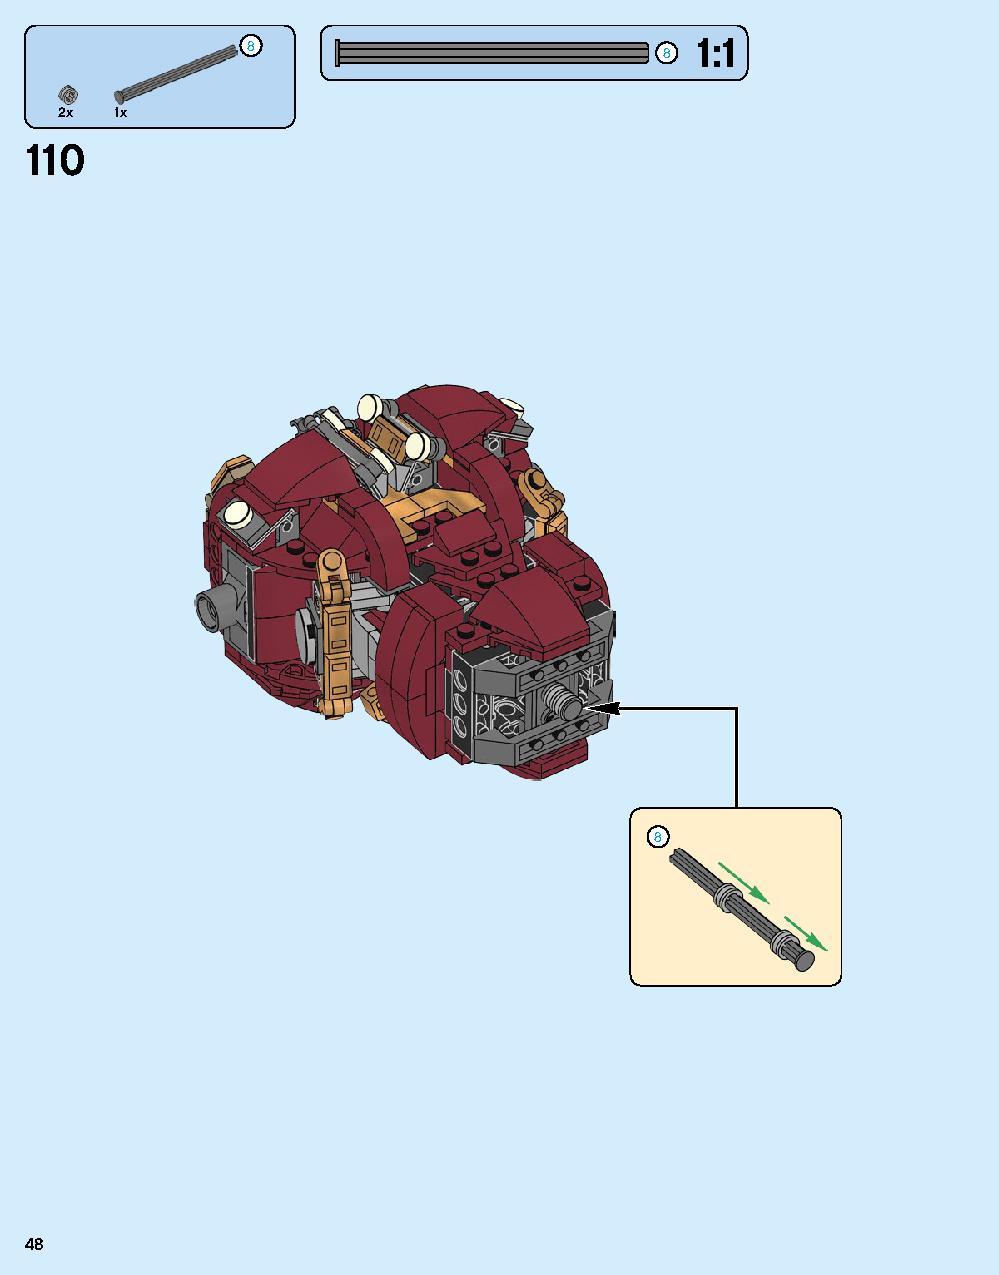 어벤져스 헐크버스터: 울트론 에디션 76105 레고 세트 제품정보 레고 조립설명서 48 page